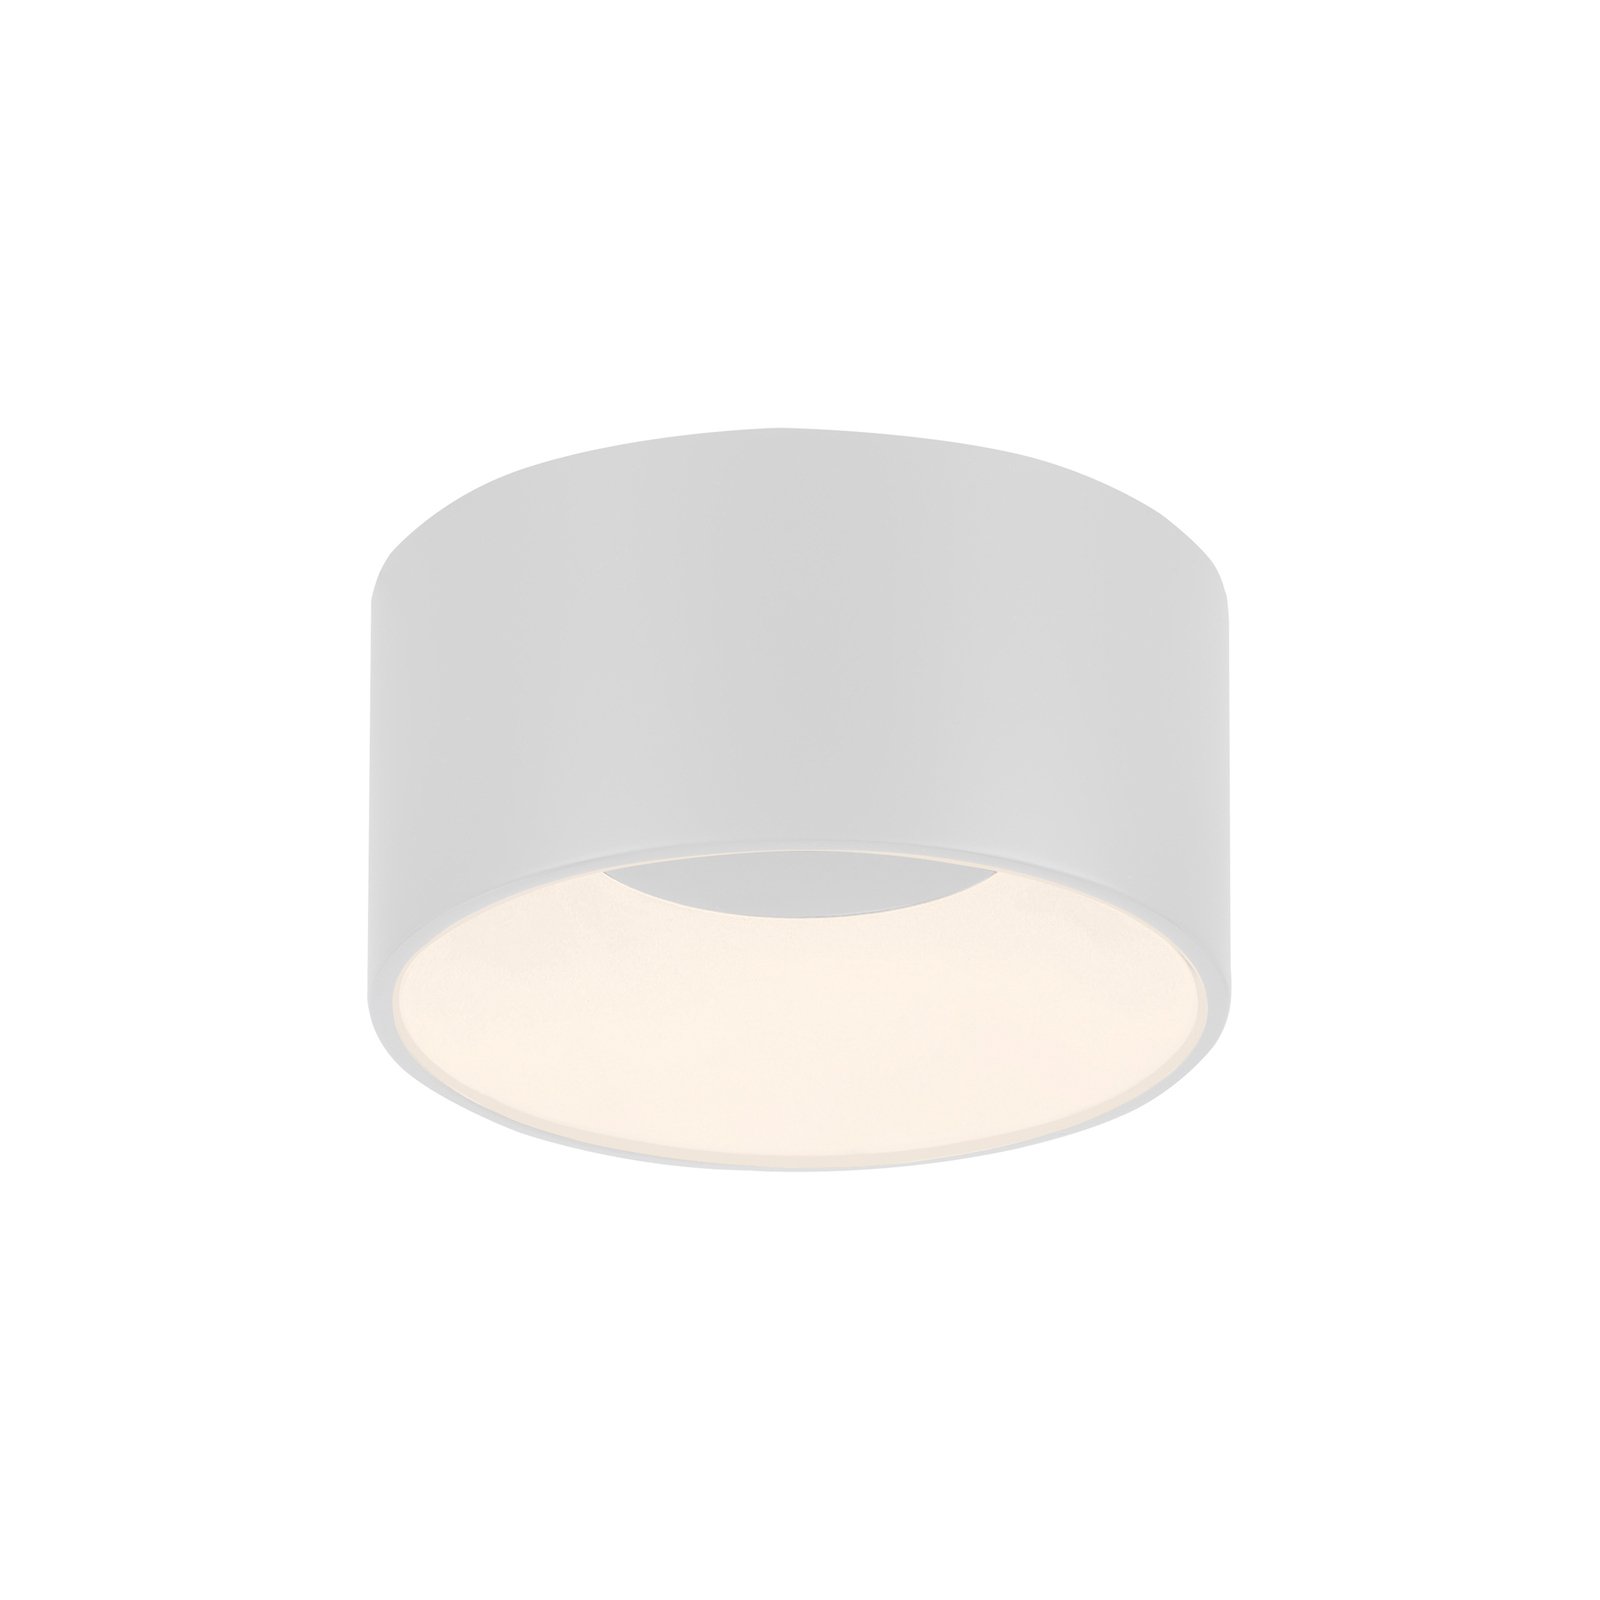 JUST LIGHT. Tanika LED stropna svetilka, bela, Ø 16 cm, z možnostjo